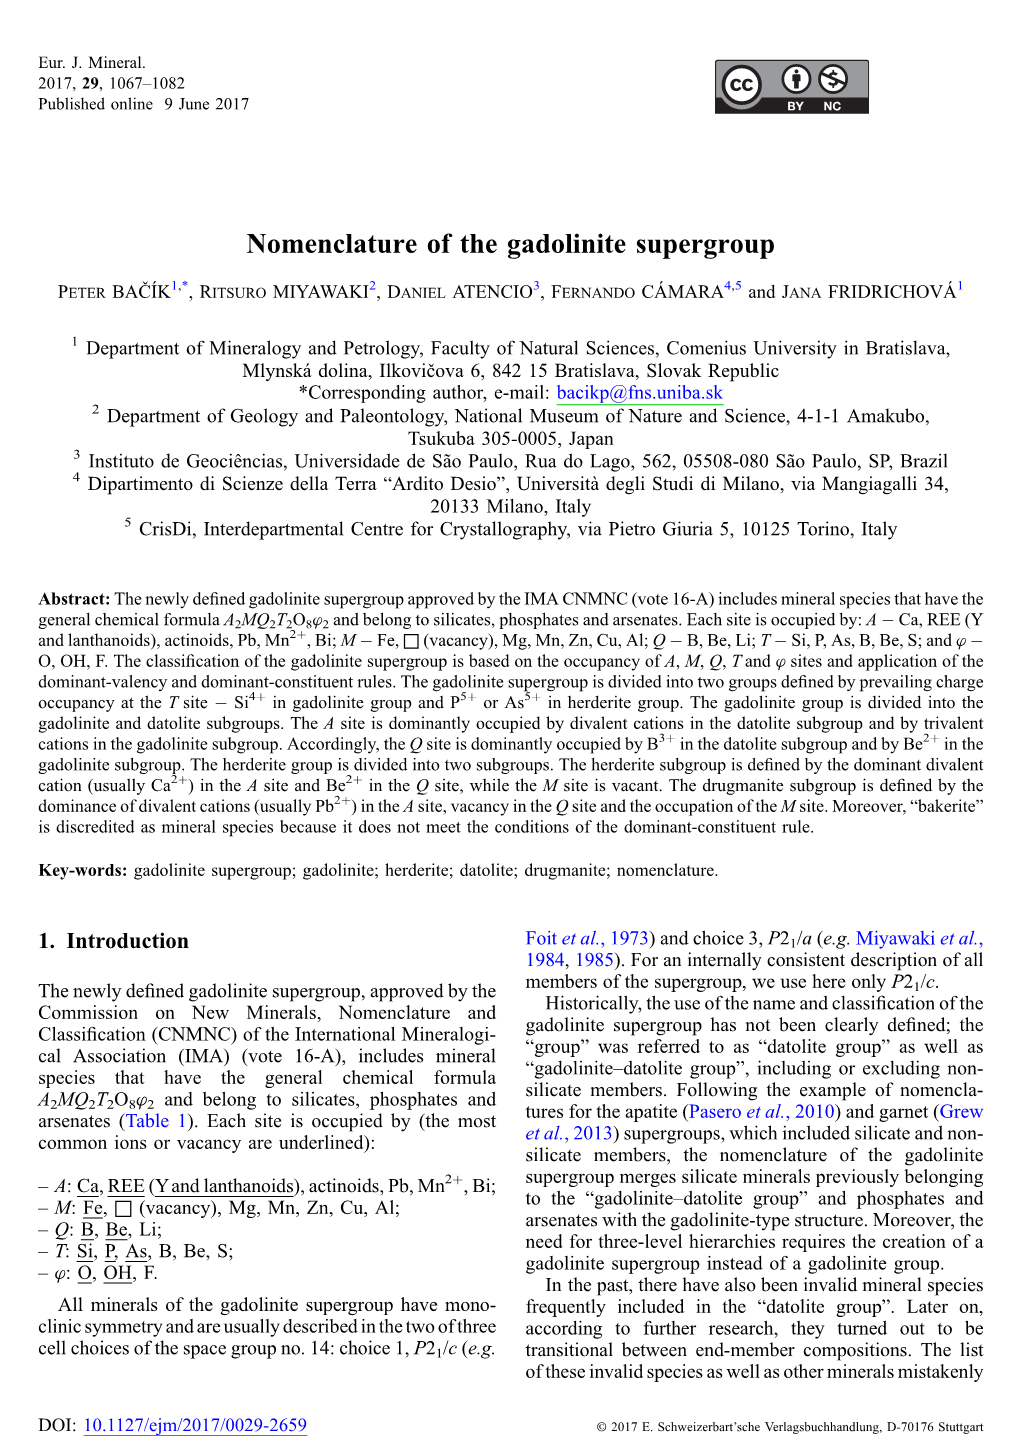 Nomenclature of the Gadolinite Supergroup